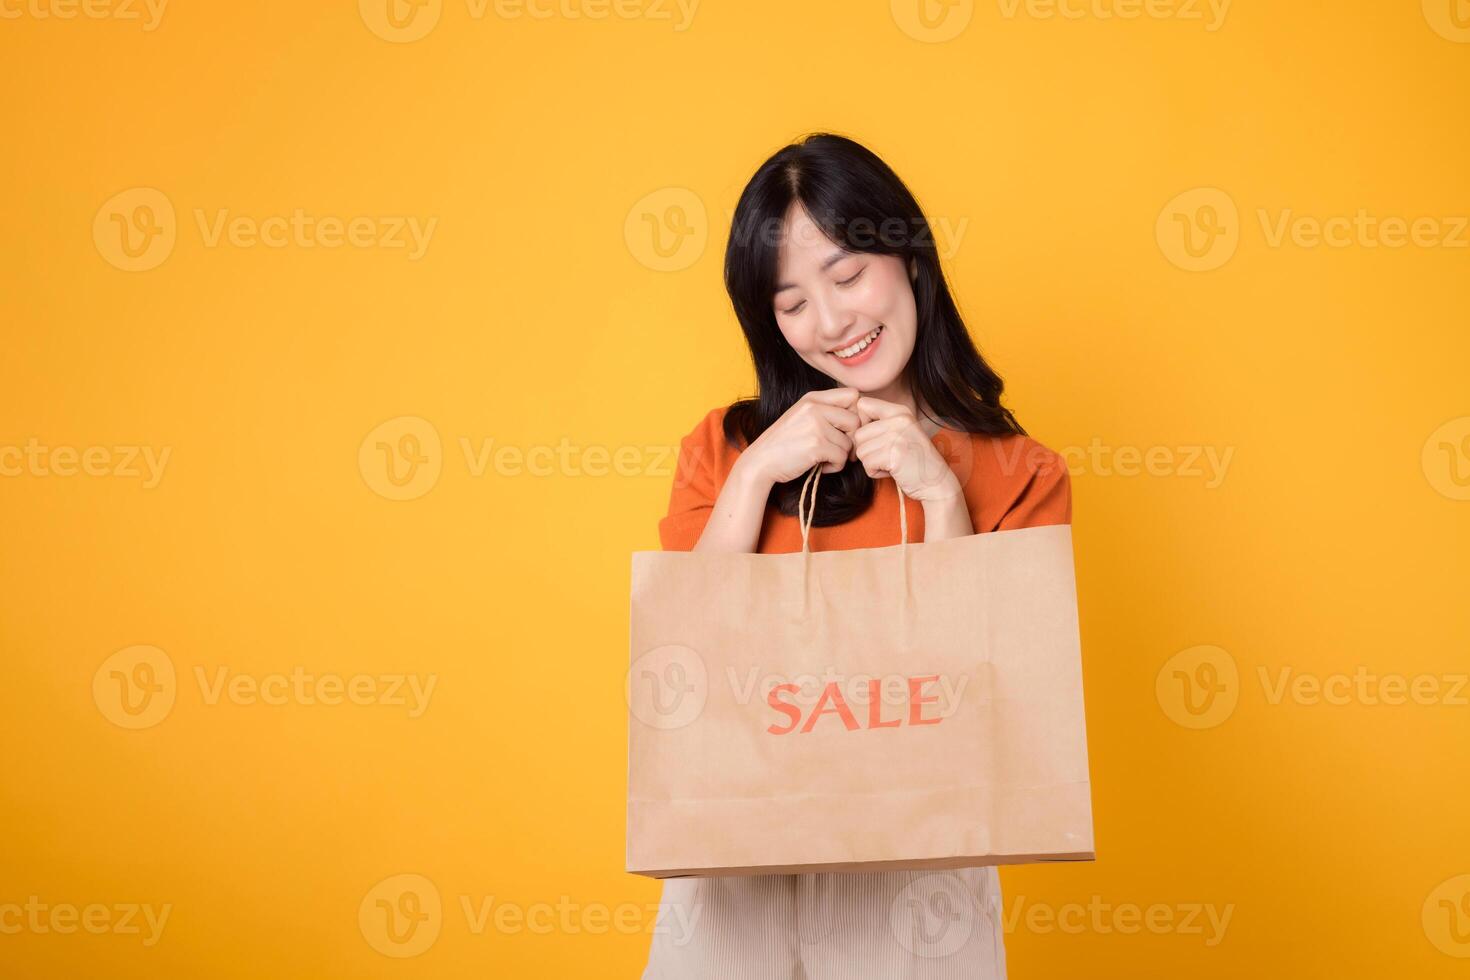 bucear dentro el emoción de compras con el mejor ofertas en ciudad. de moda mujer sostiene bolsas, reflejando el felicidad de hallazgo el último descuentos foto